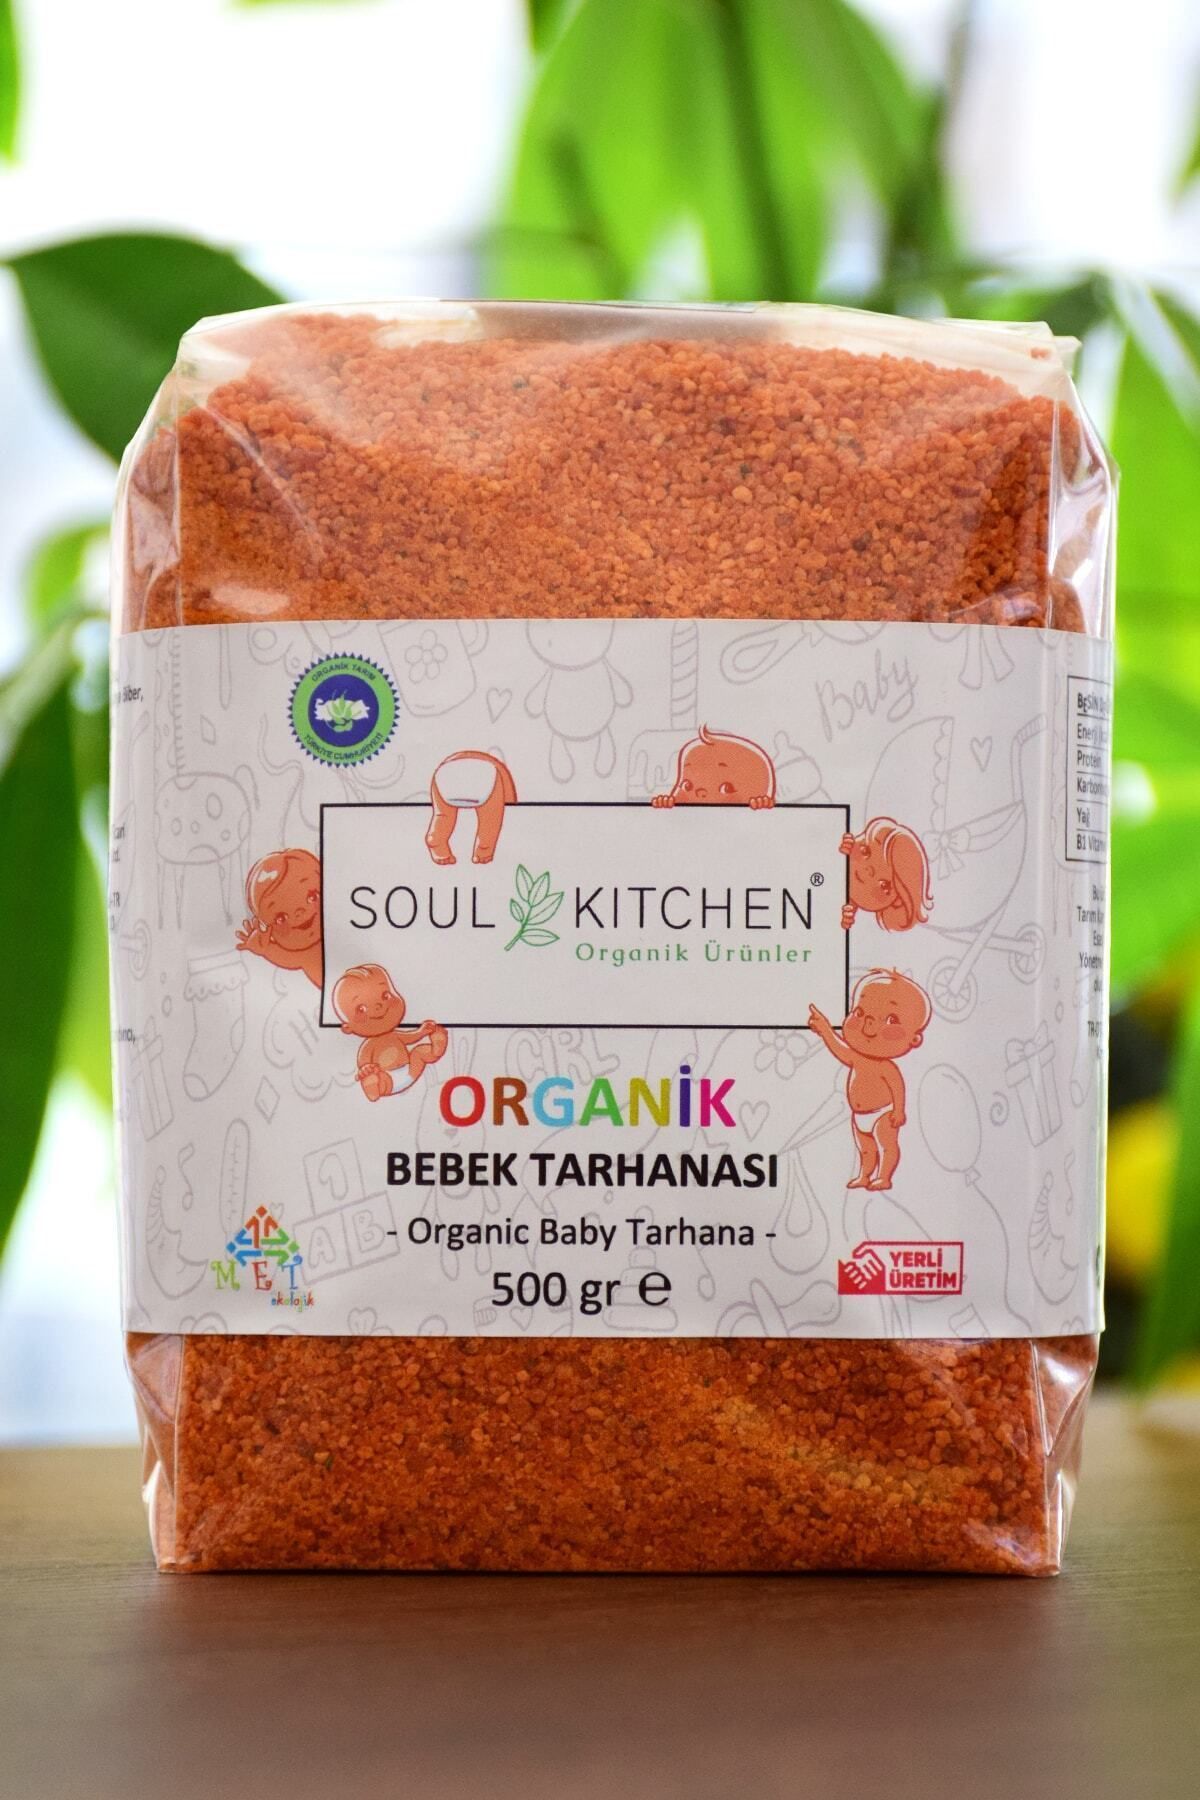 Soul Kitchen Organik Ürünler Organik Bebek Tarhanası 500gr